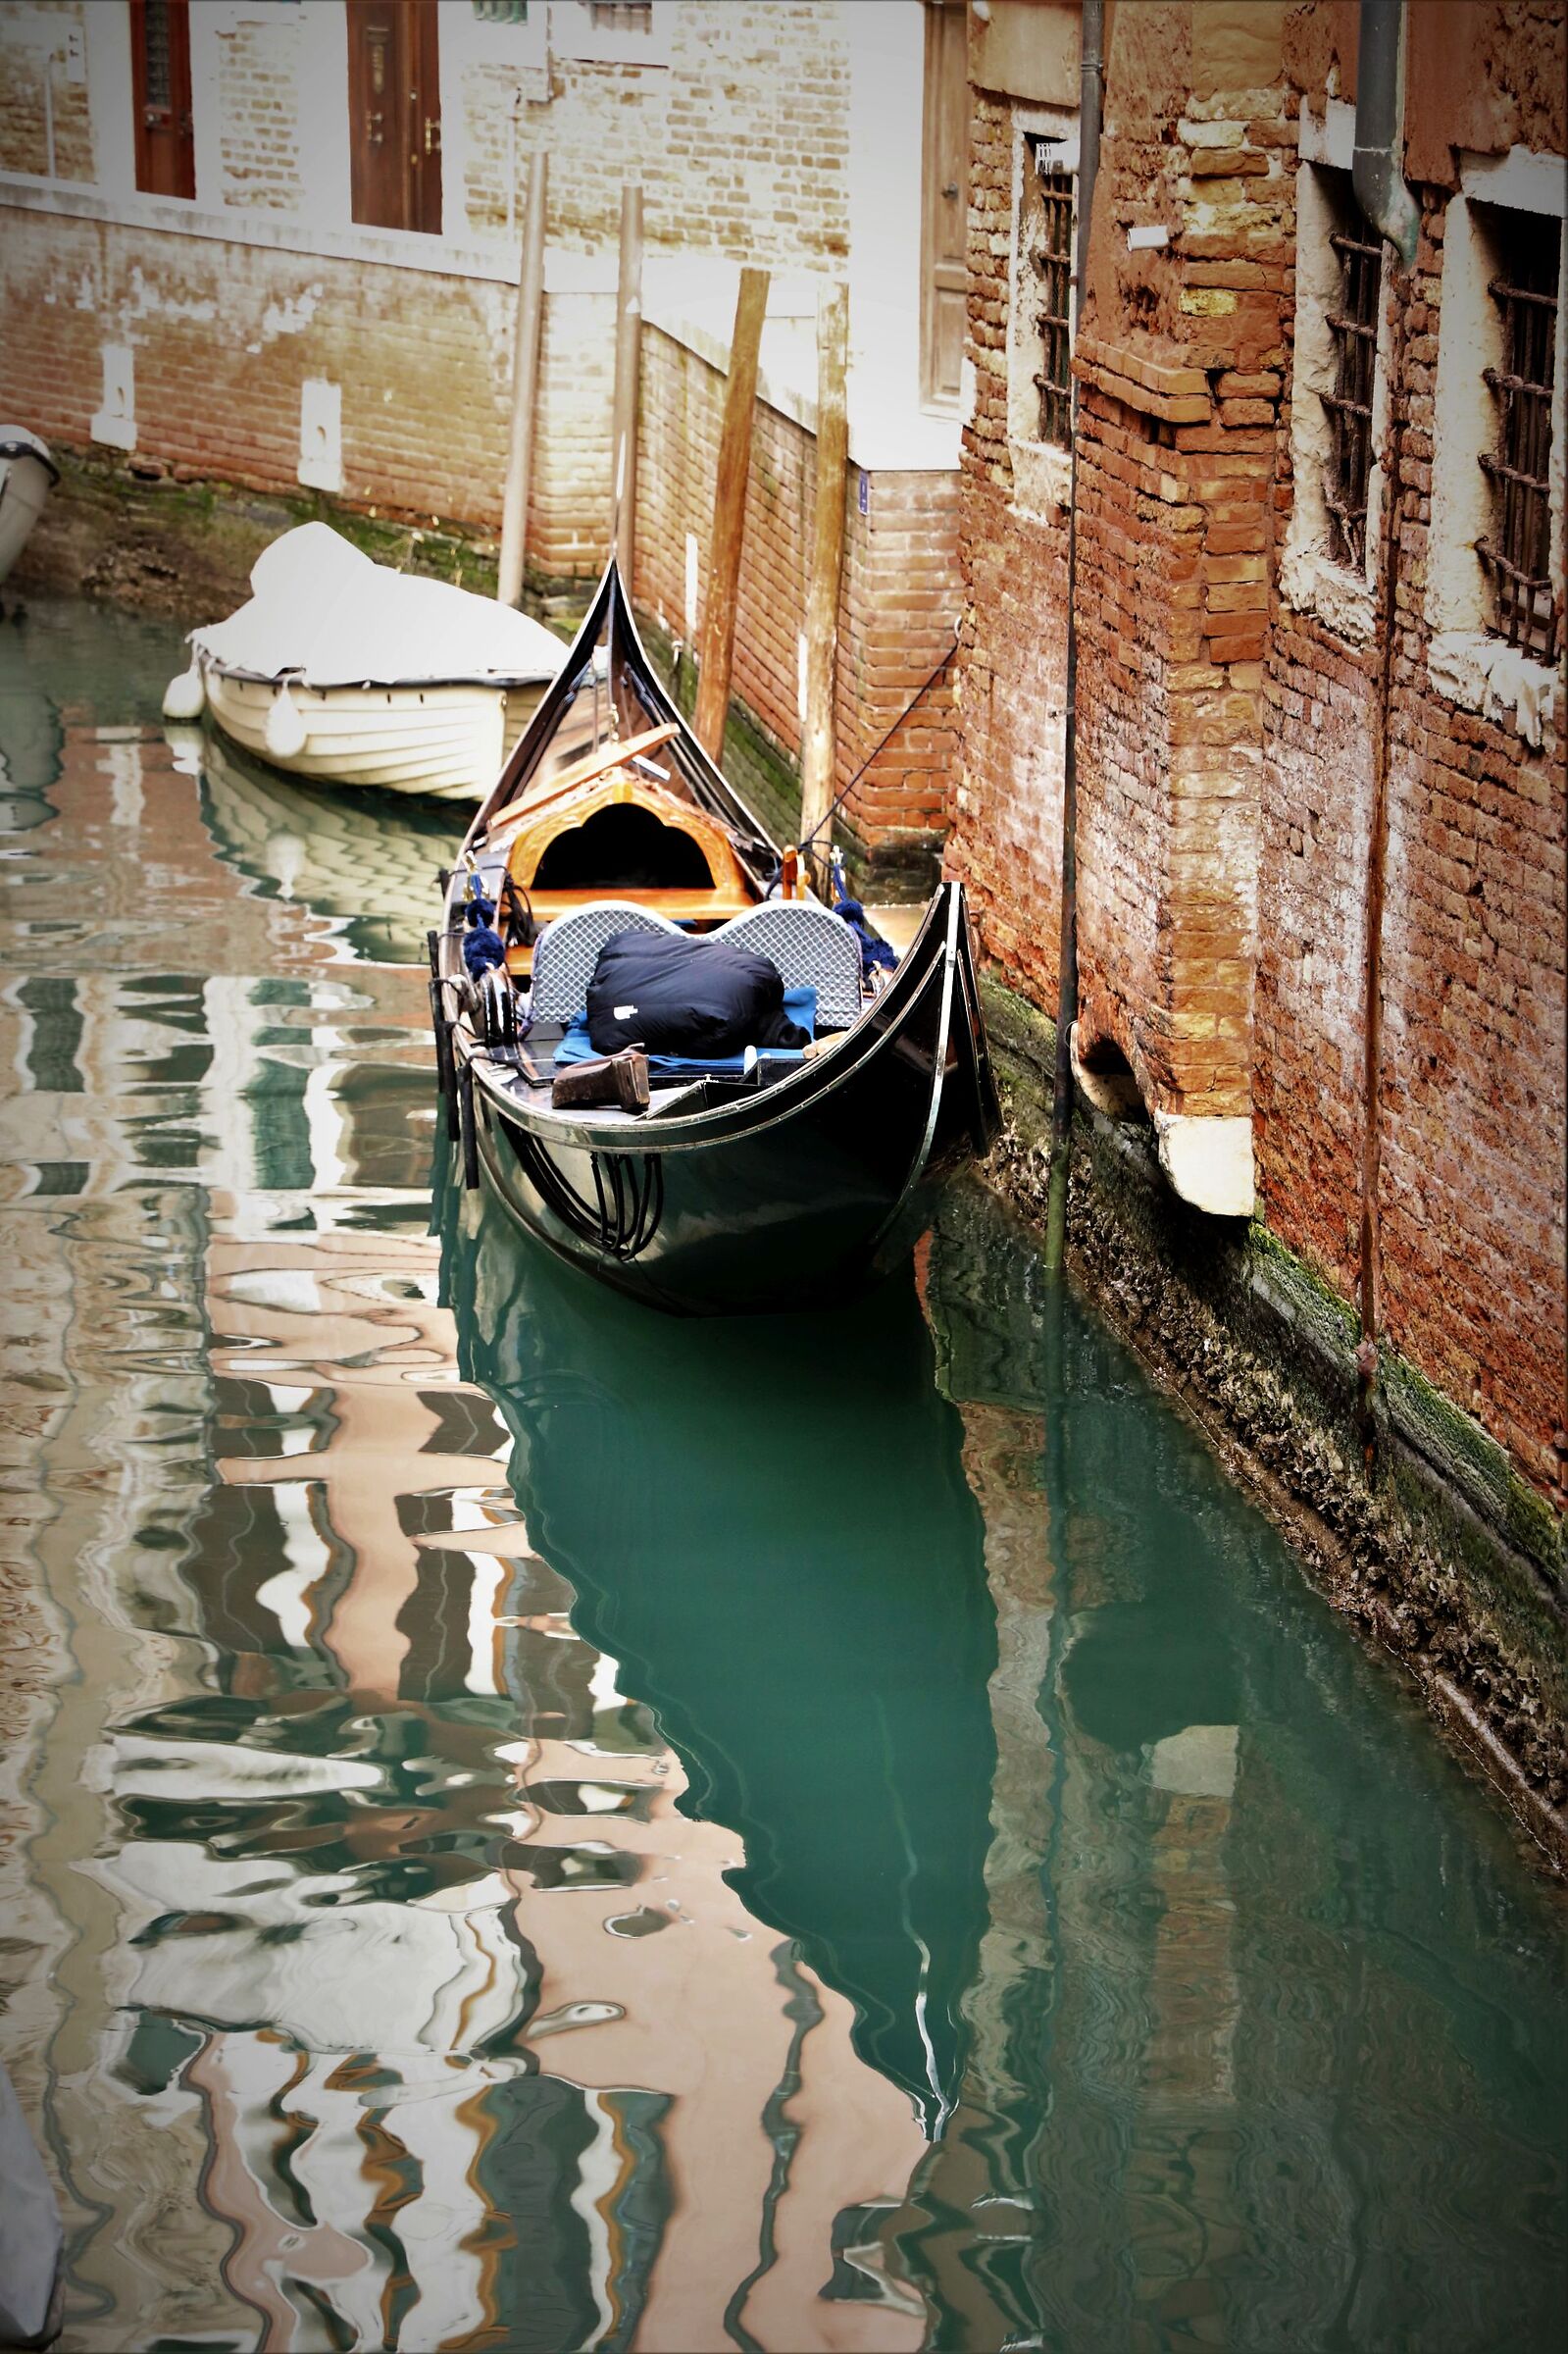 Venice, hidden corners - Venice, hidden corners...